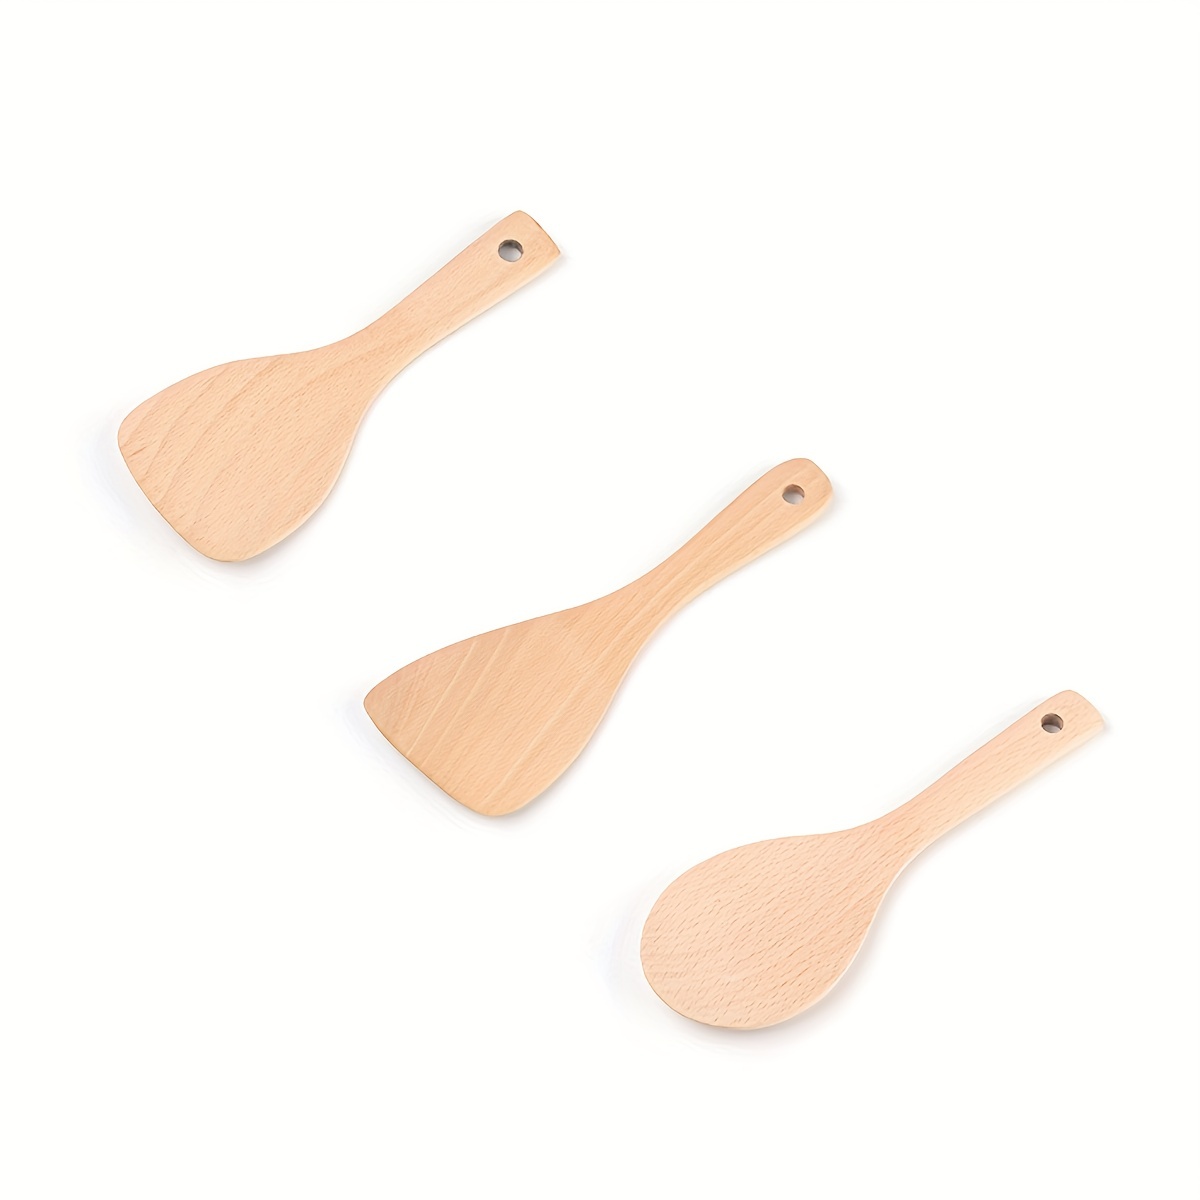 Petite spatule pour enfant, en bois de hêtre